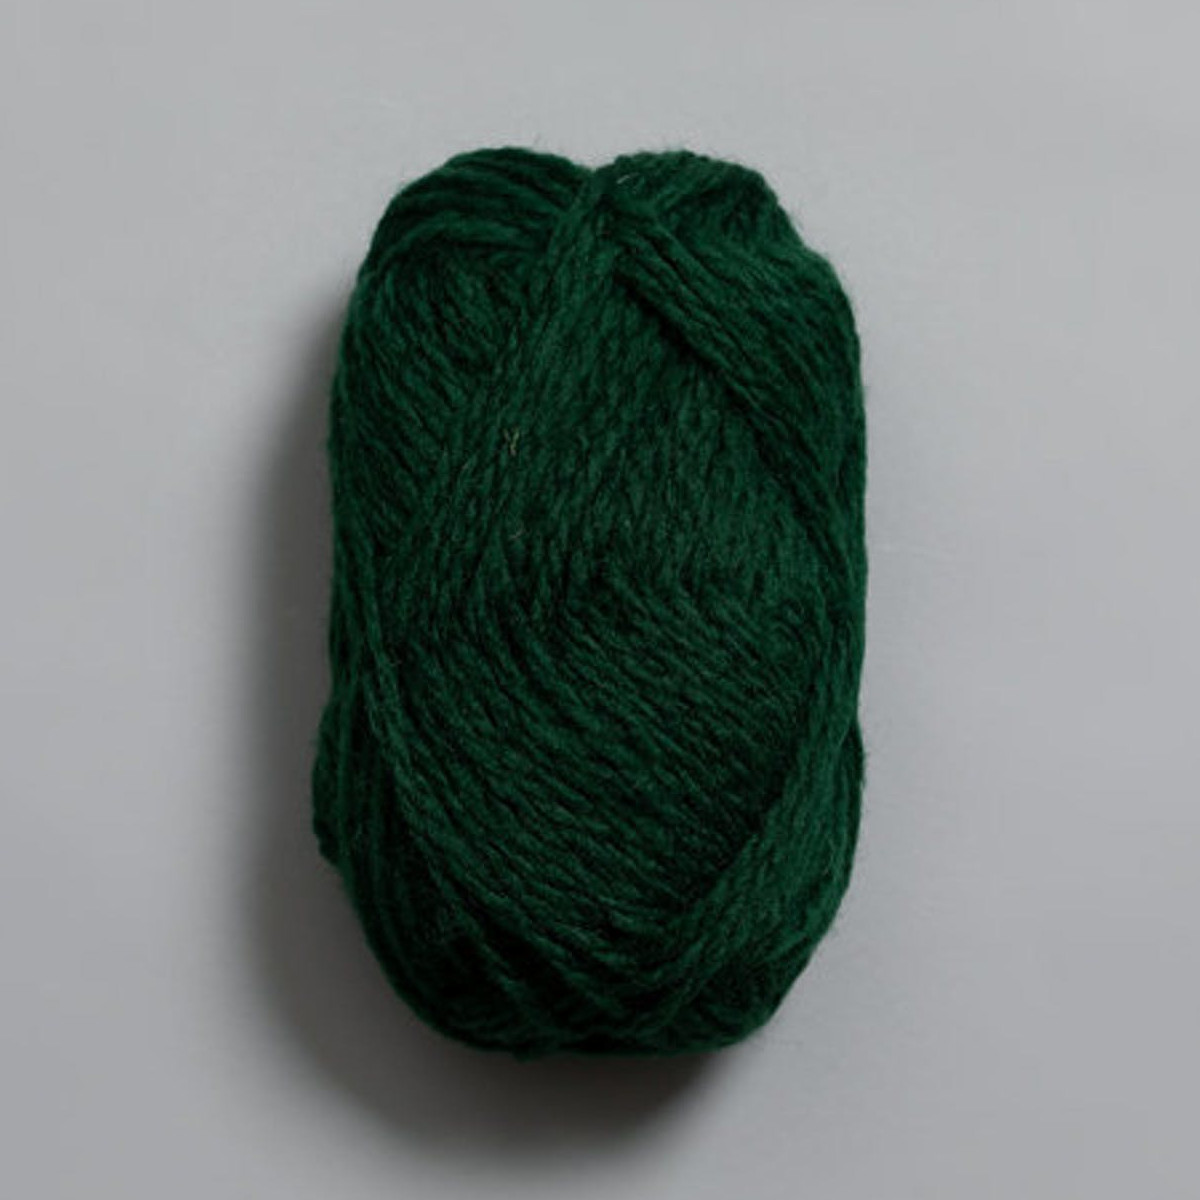 Vams - Dyp grønn / Tiefgrün (109)